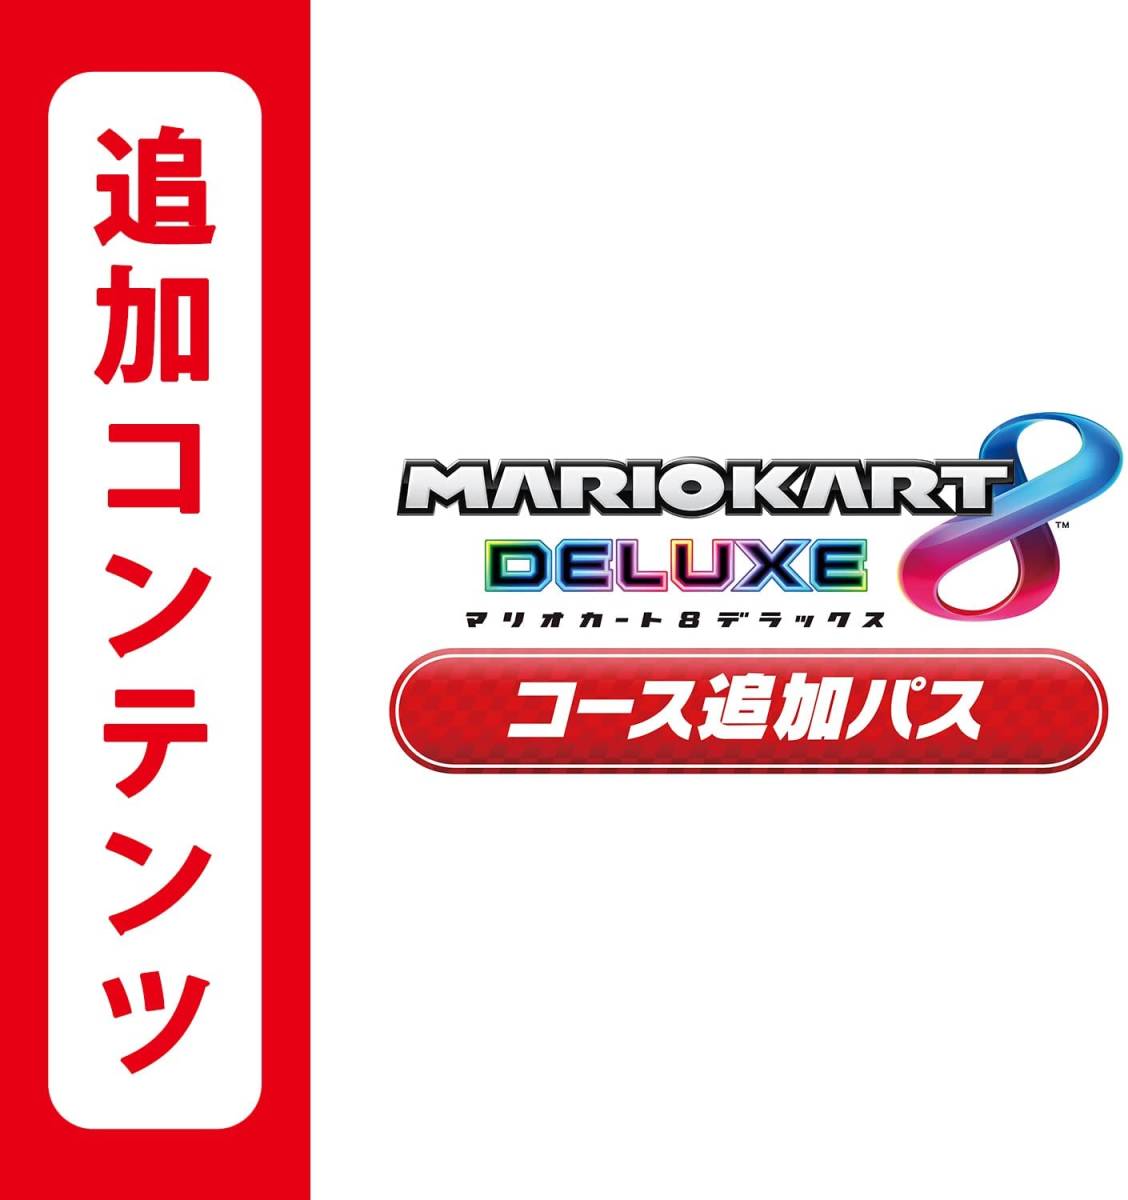 マリオカート8 デラックス コース追加パス 追加コンテンツ 任天堂switch ニンテンドースイッチ コード マリカーDX DLC Nintendo 追加コース